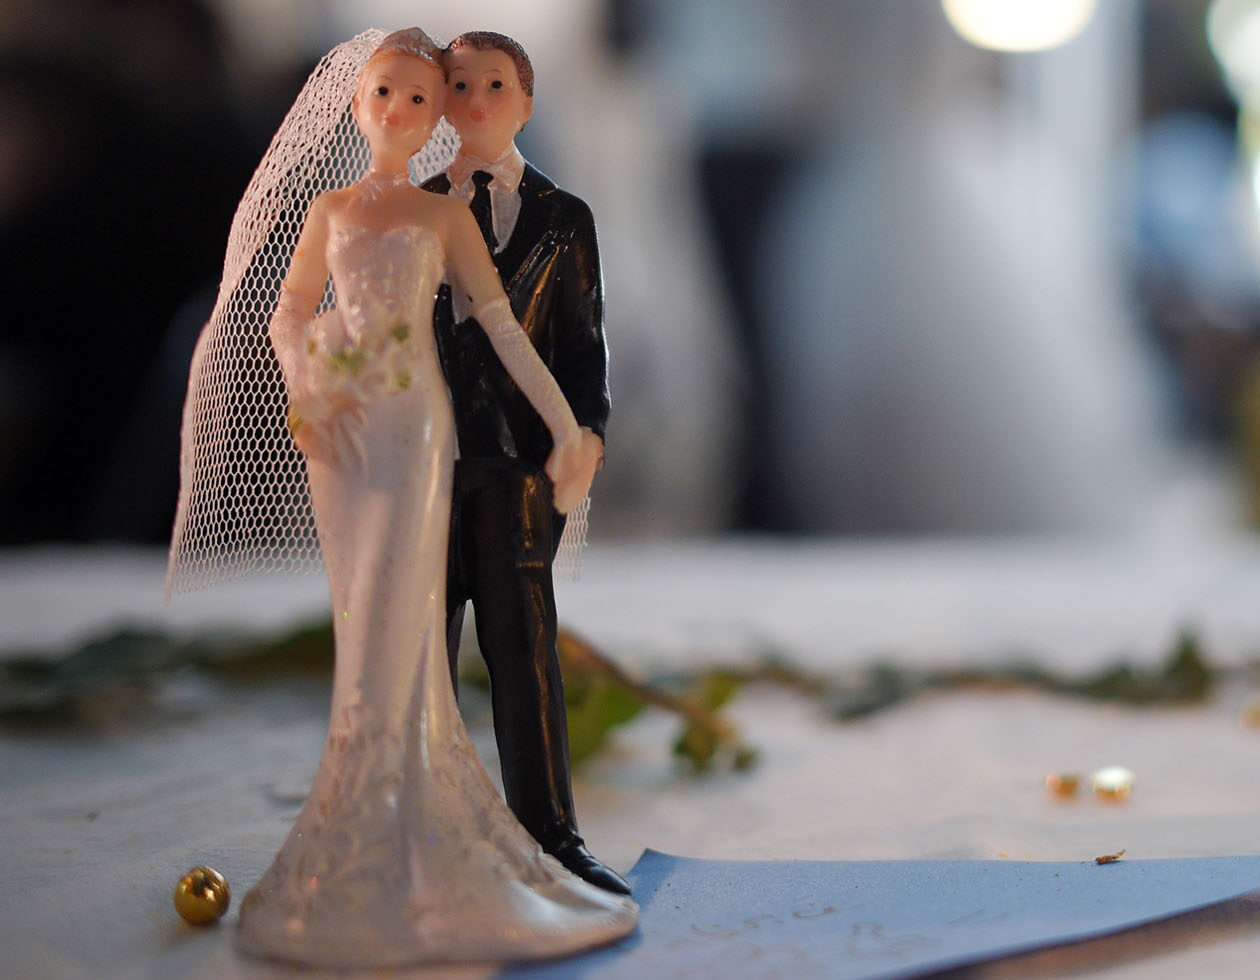 Coronavirus : pour réussir à se marier, ce couple a trouvé une solution très particulière